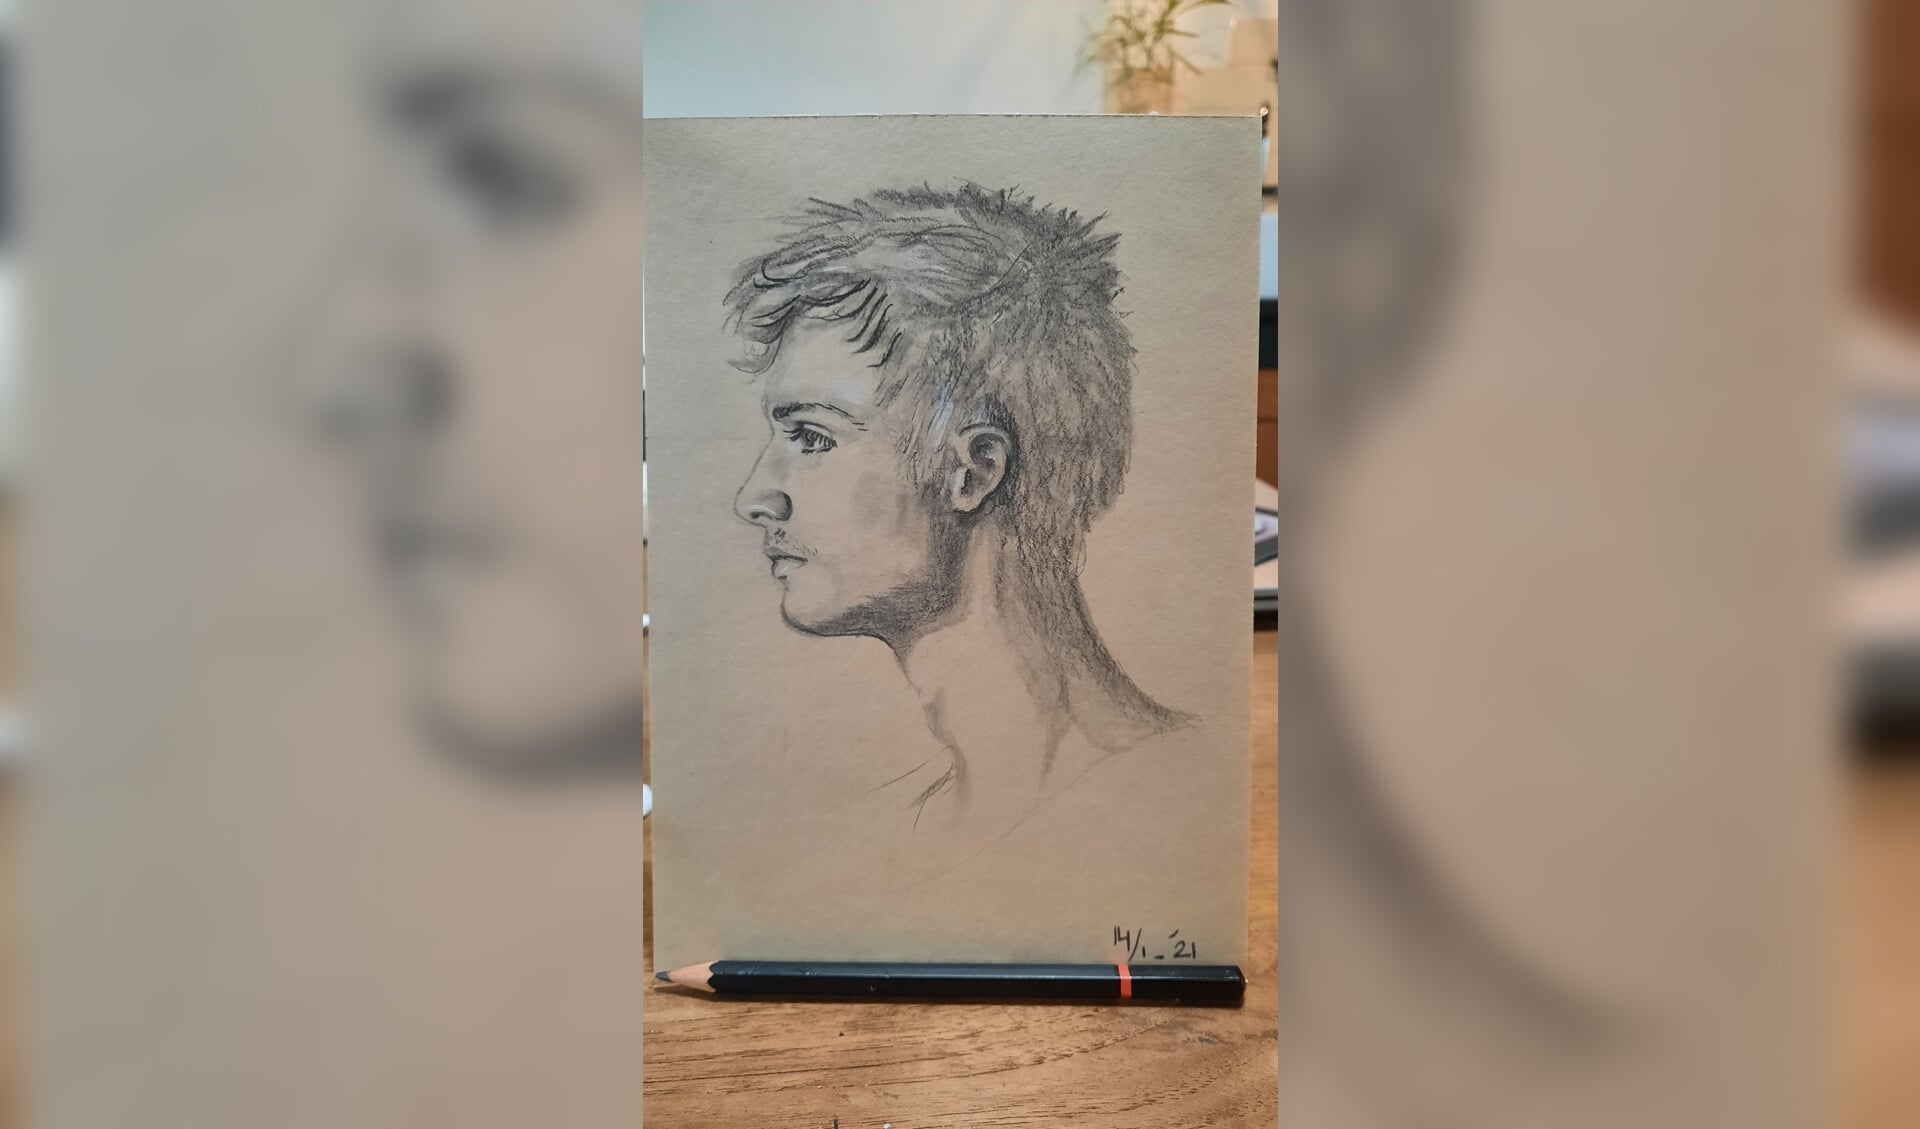 Leer hoe je een realistisch portret kan tekenen.